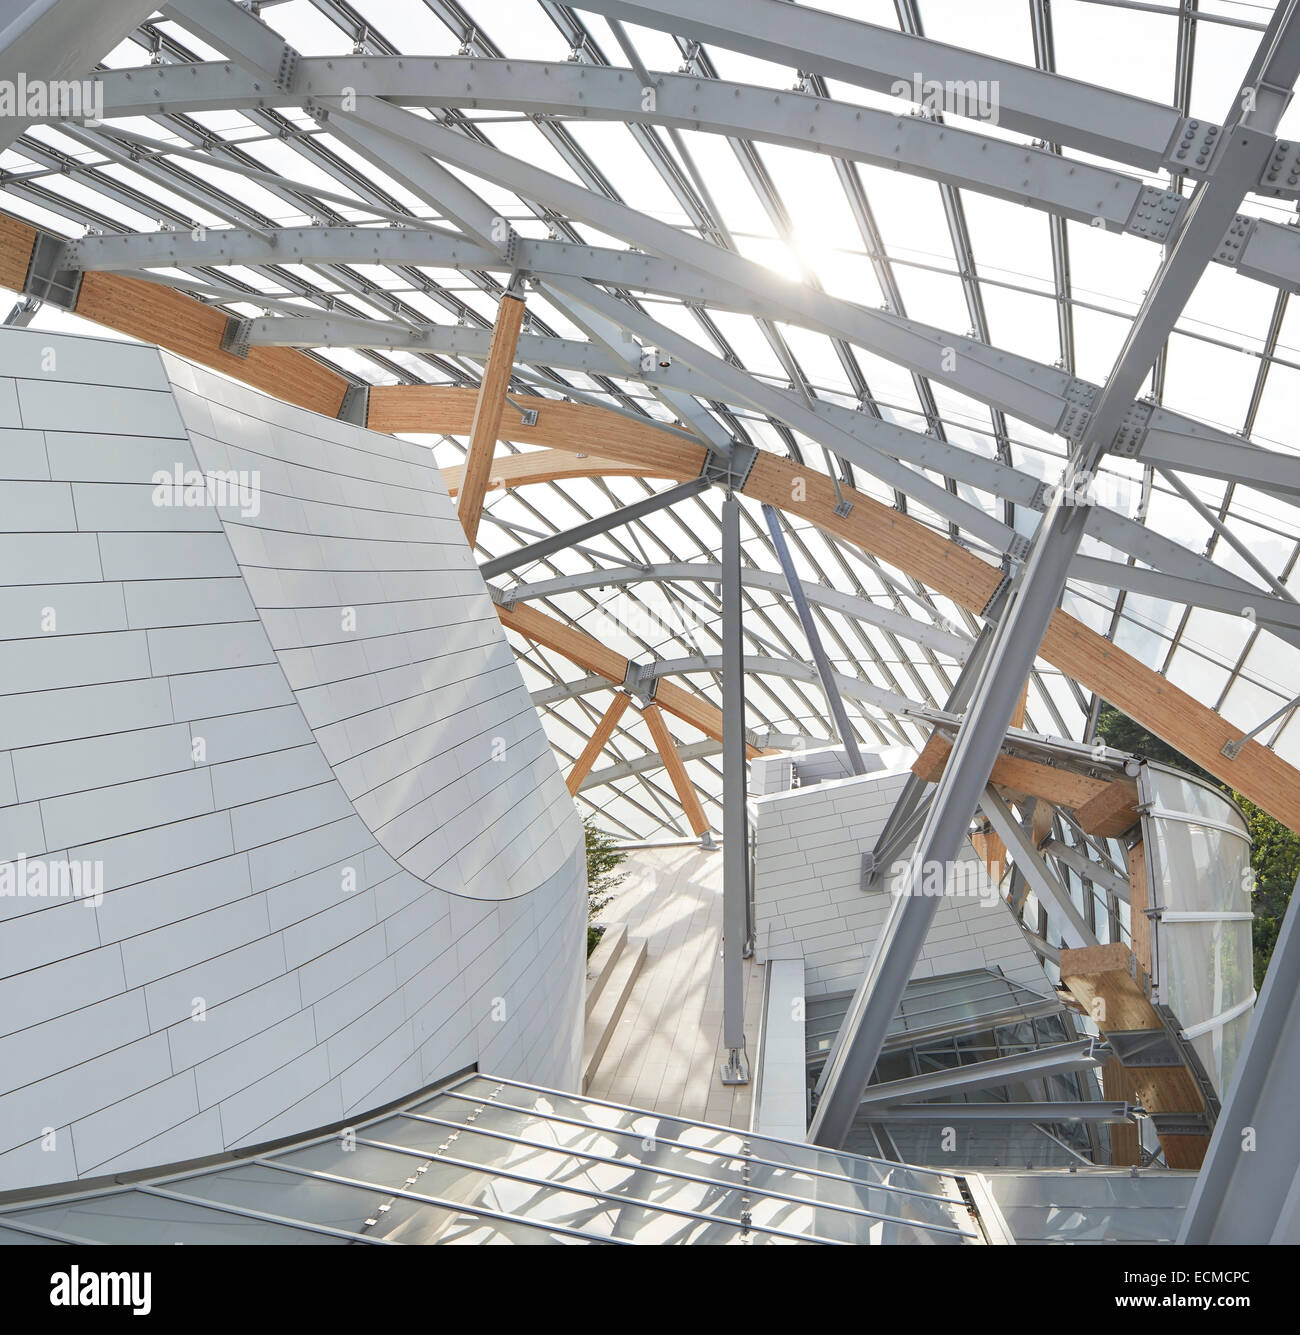 Fondation Louis Vuitton, Paris, France. Architect: Gehry Partners Stock Photo: 76666420 - Alamy